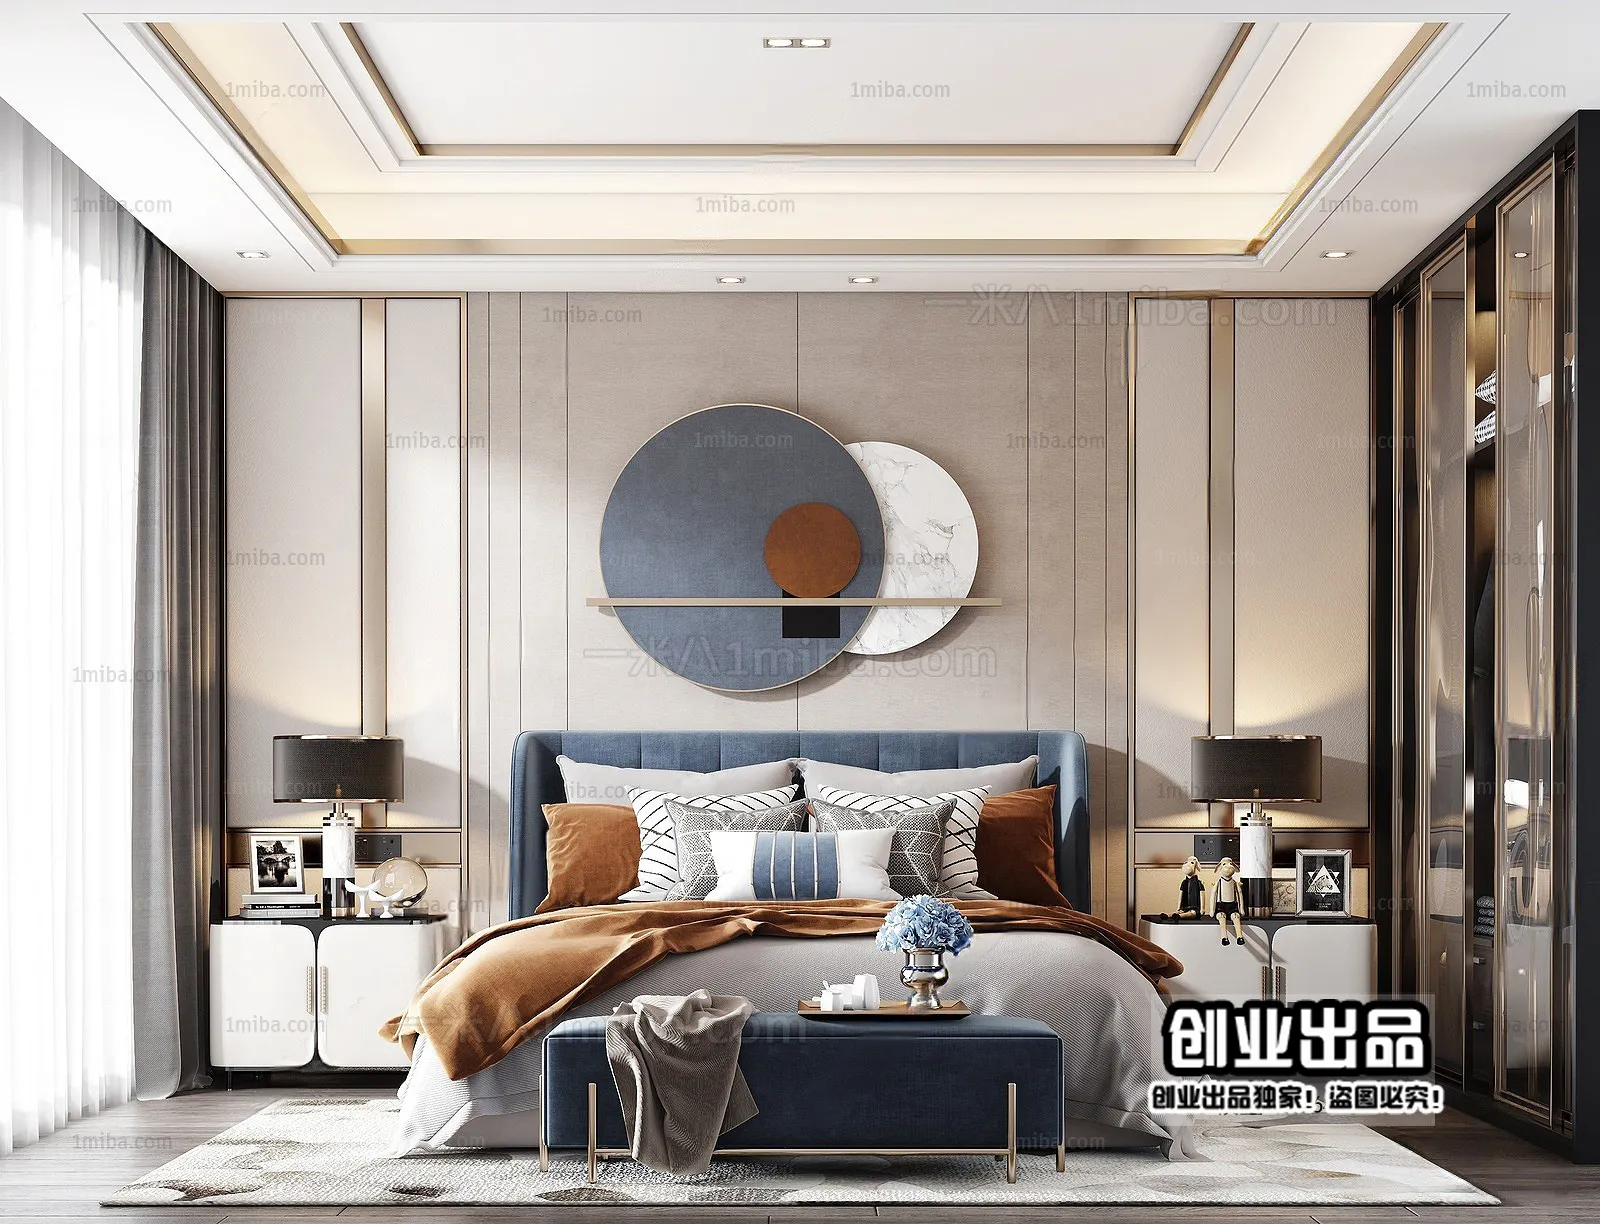 Bedroom – Modern Interior Design – 3D Models – 099